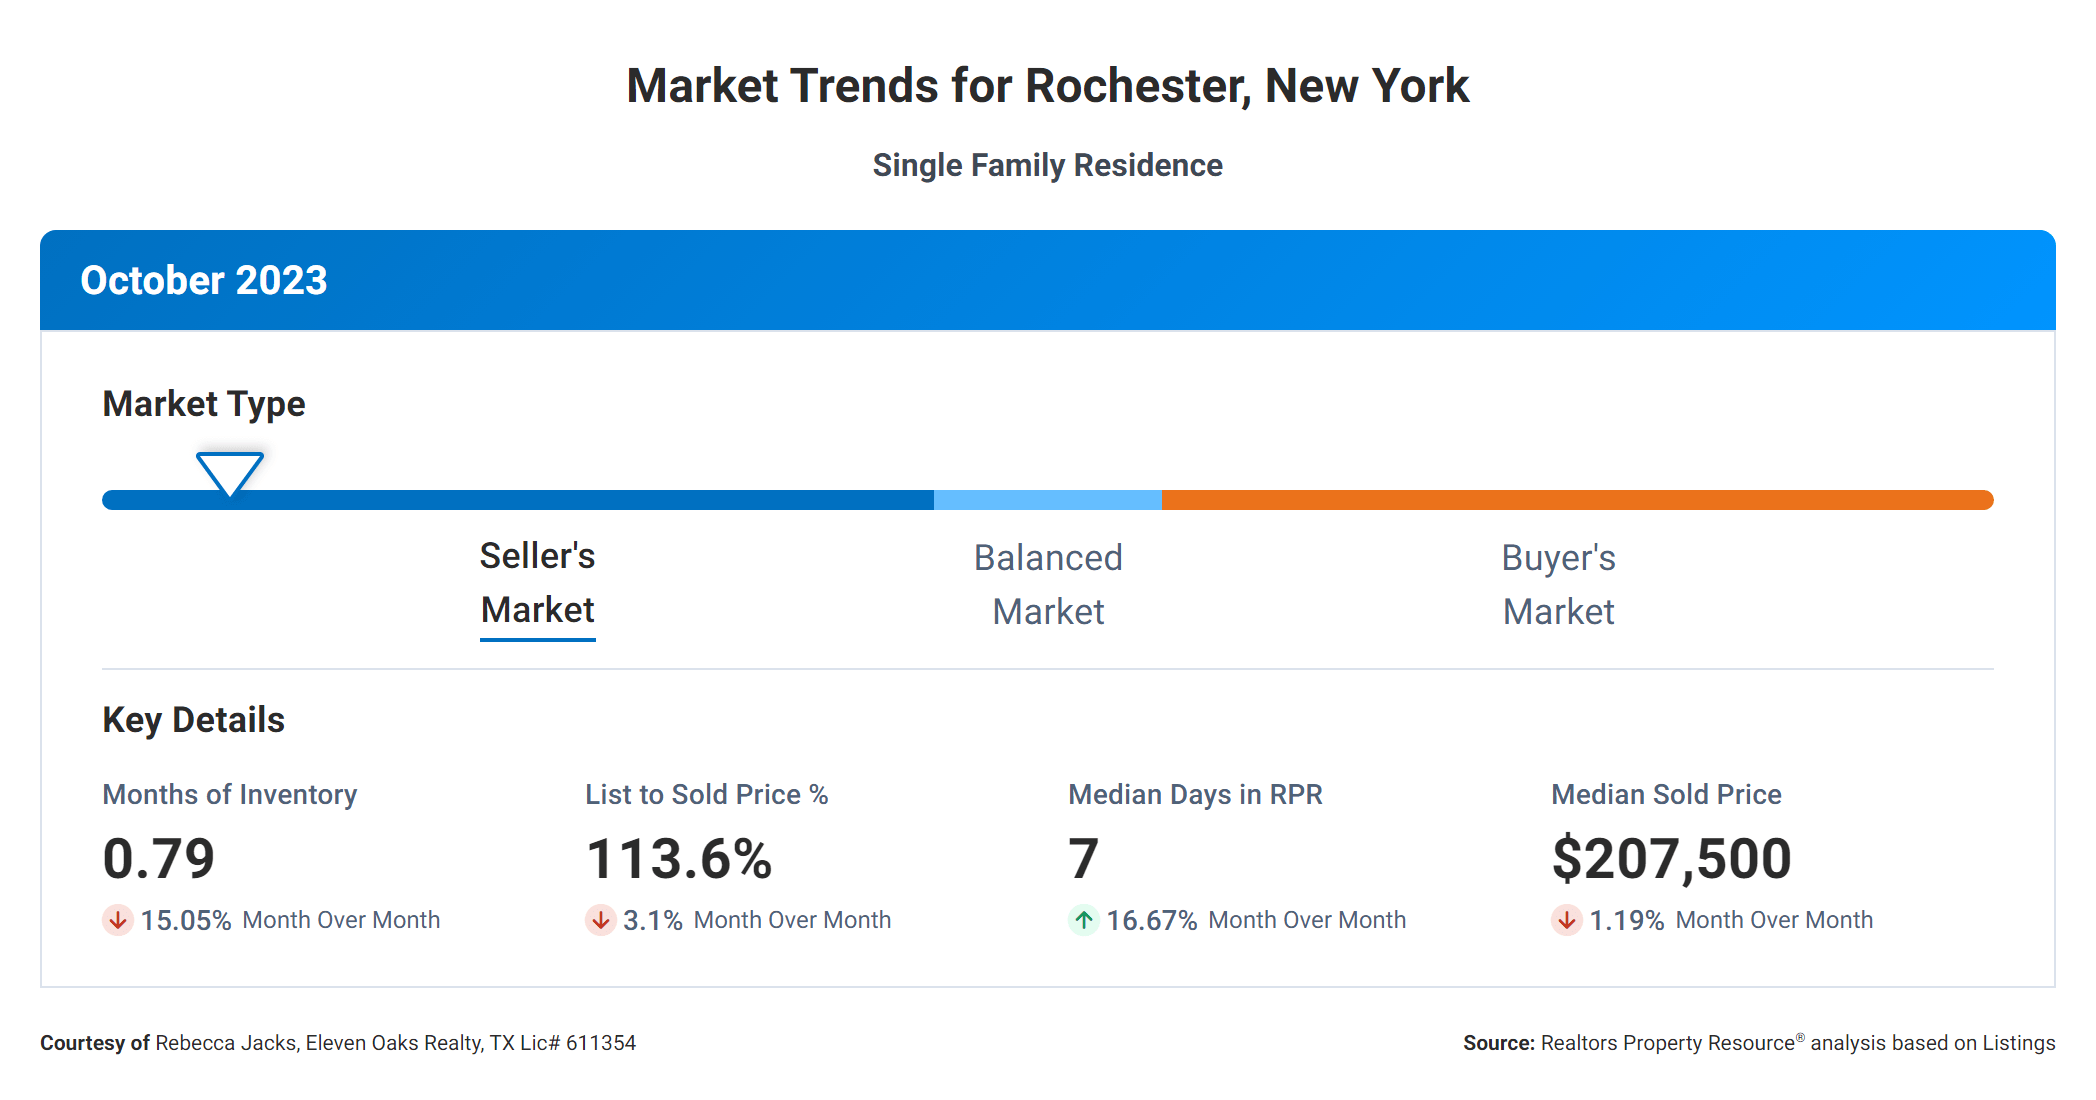 October 2023 market trends for Rochester New York